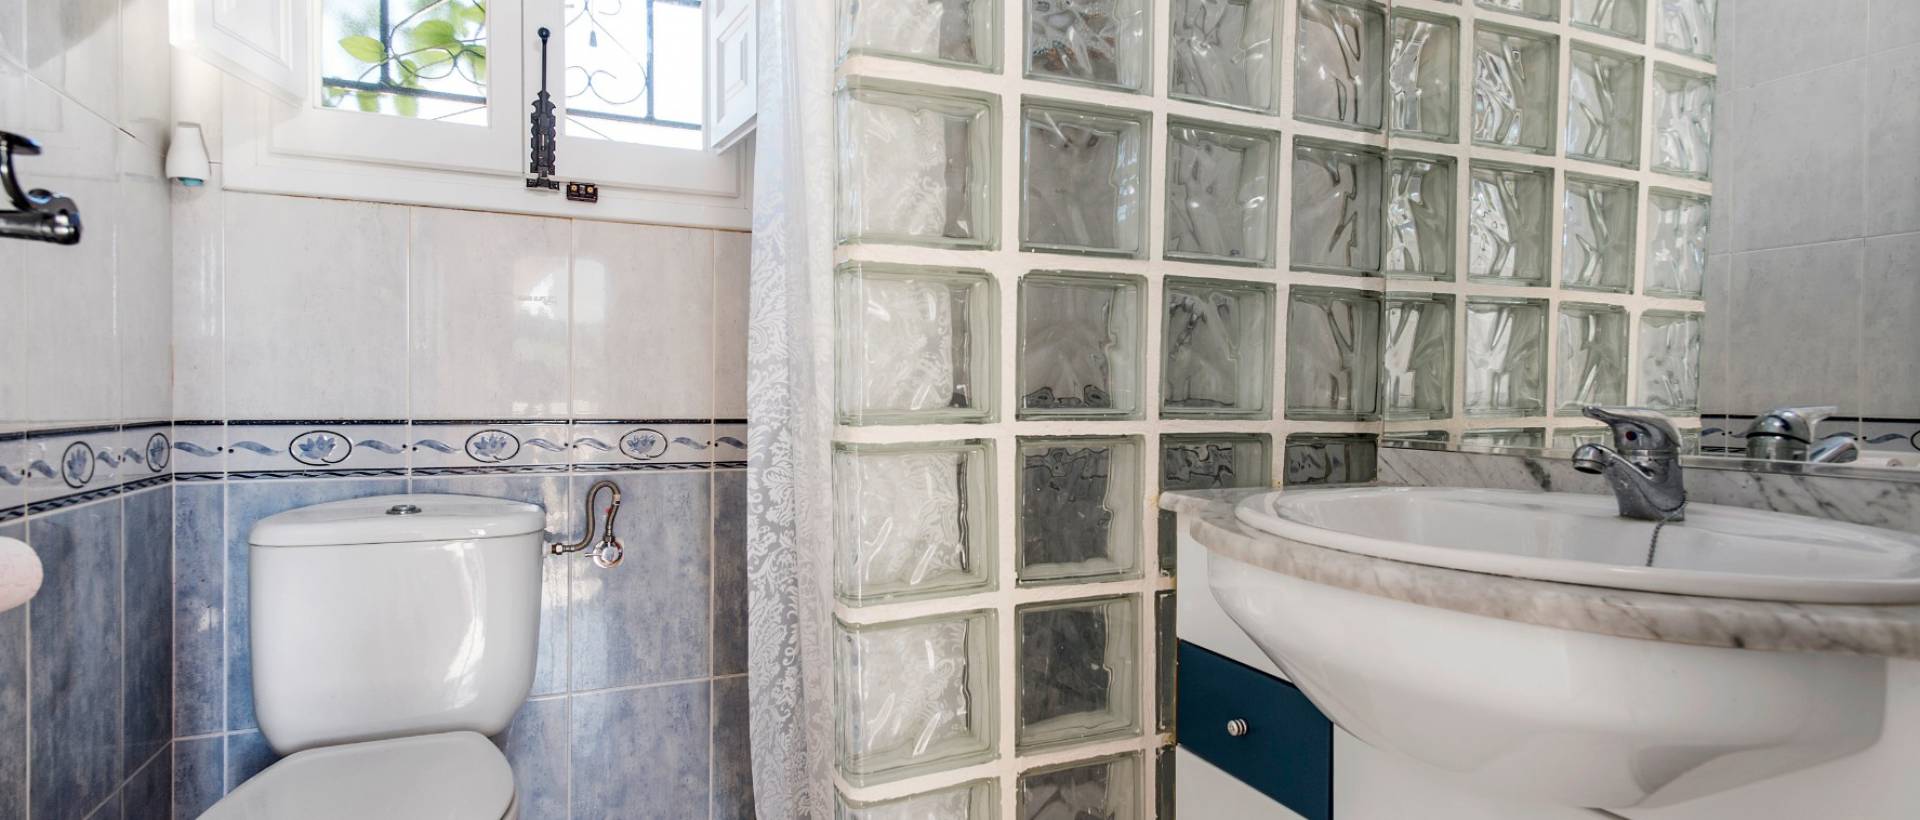 Cuarto de baño | Almoradí Casa de campo en venta